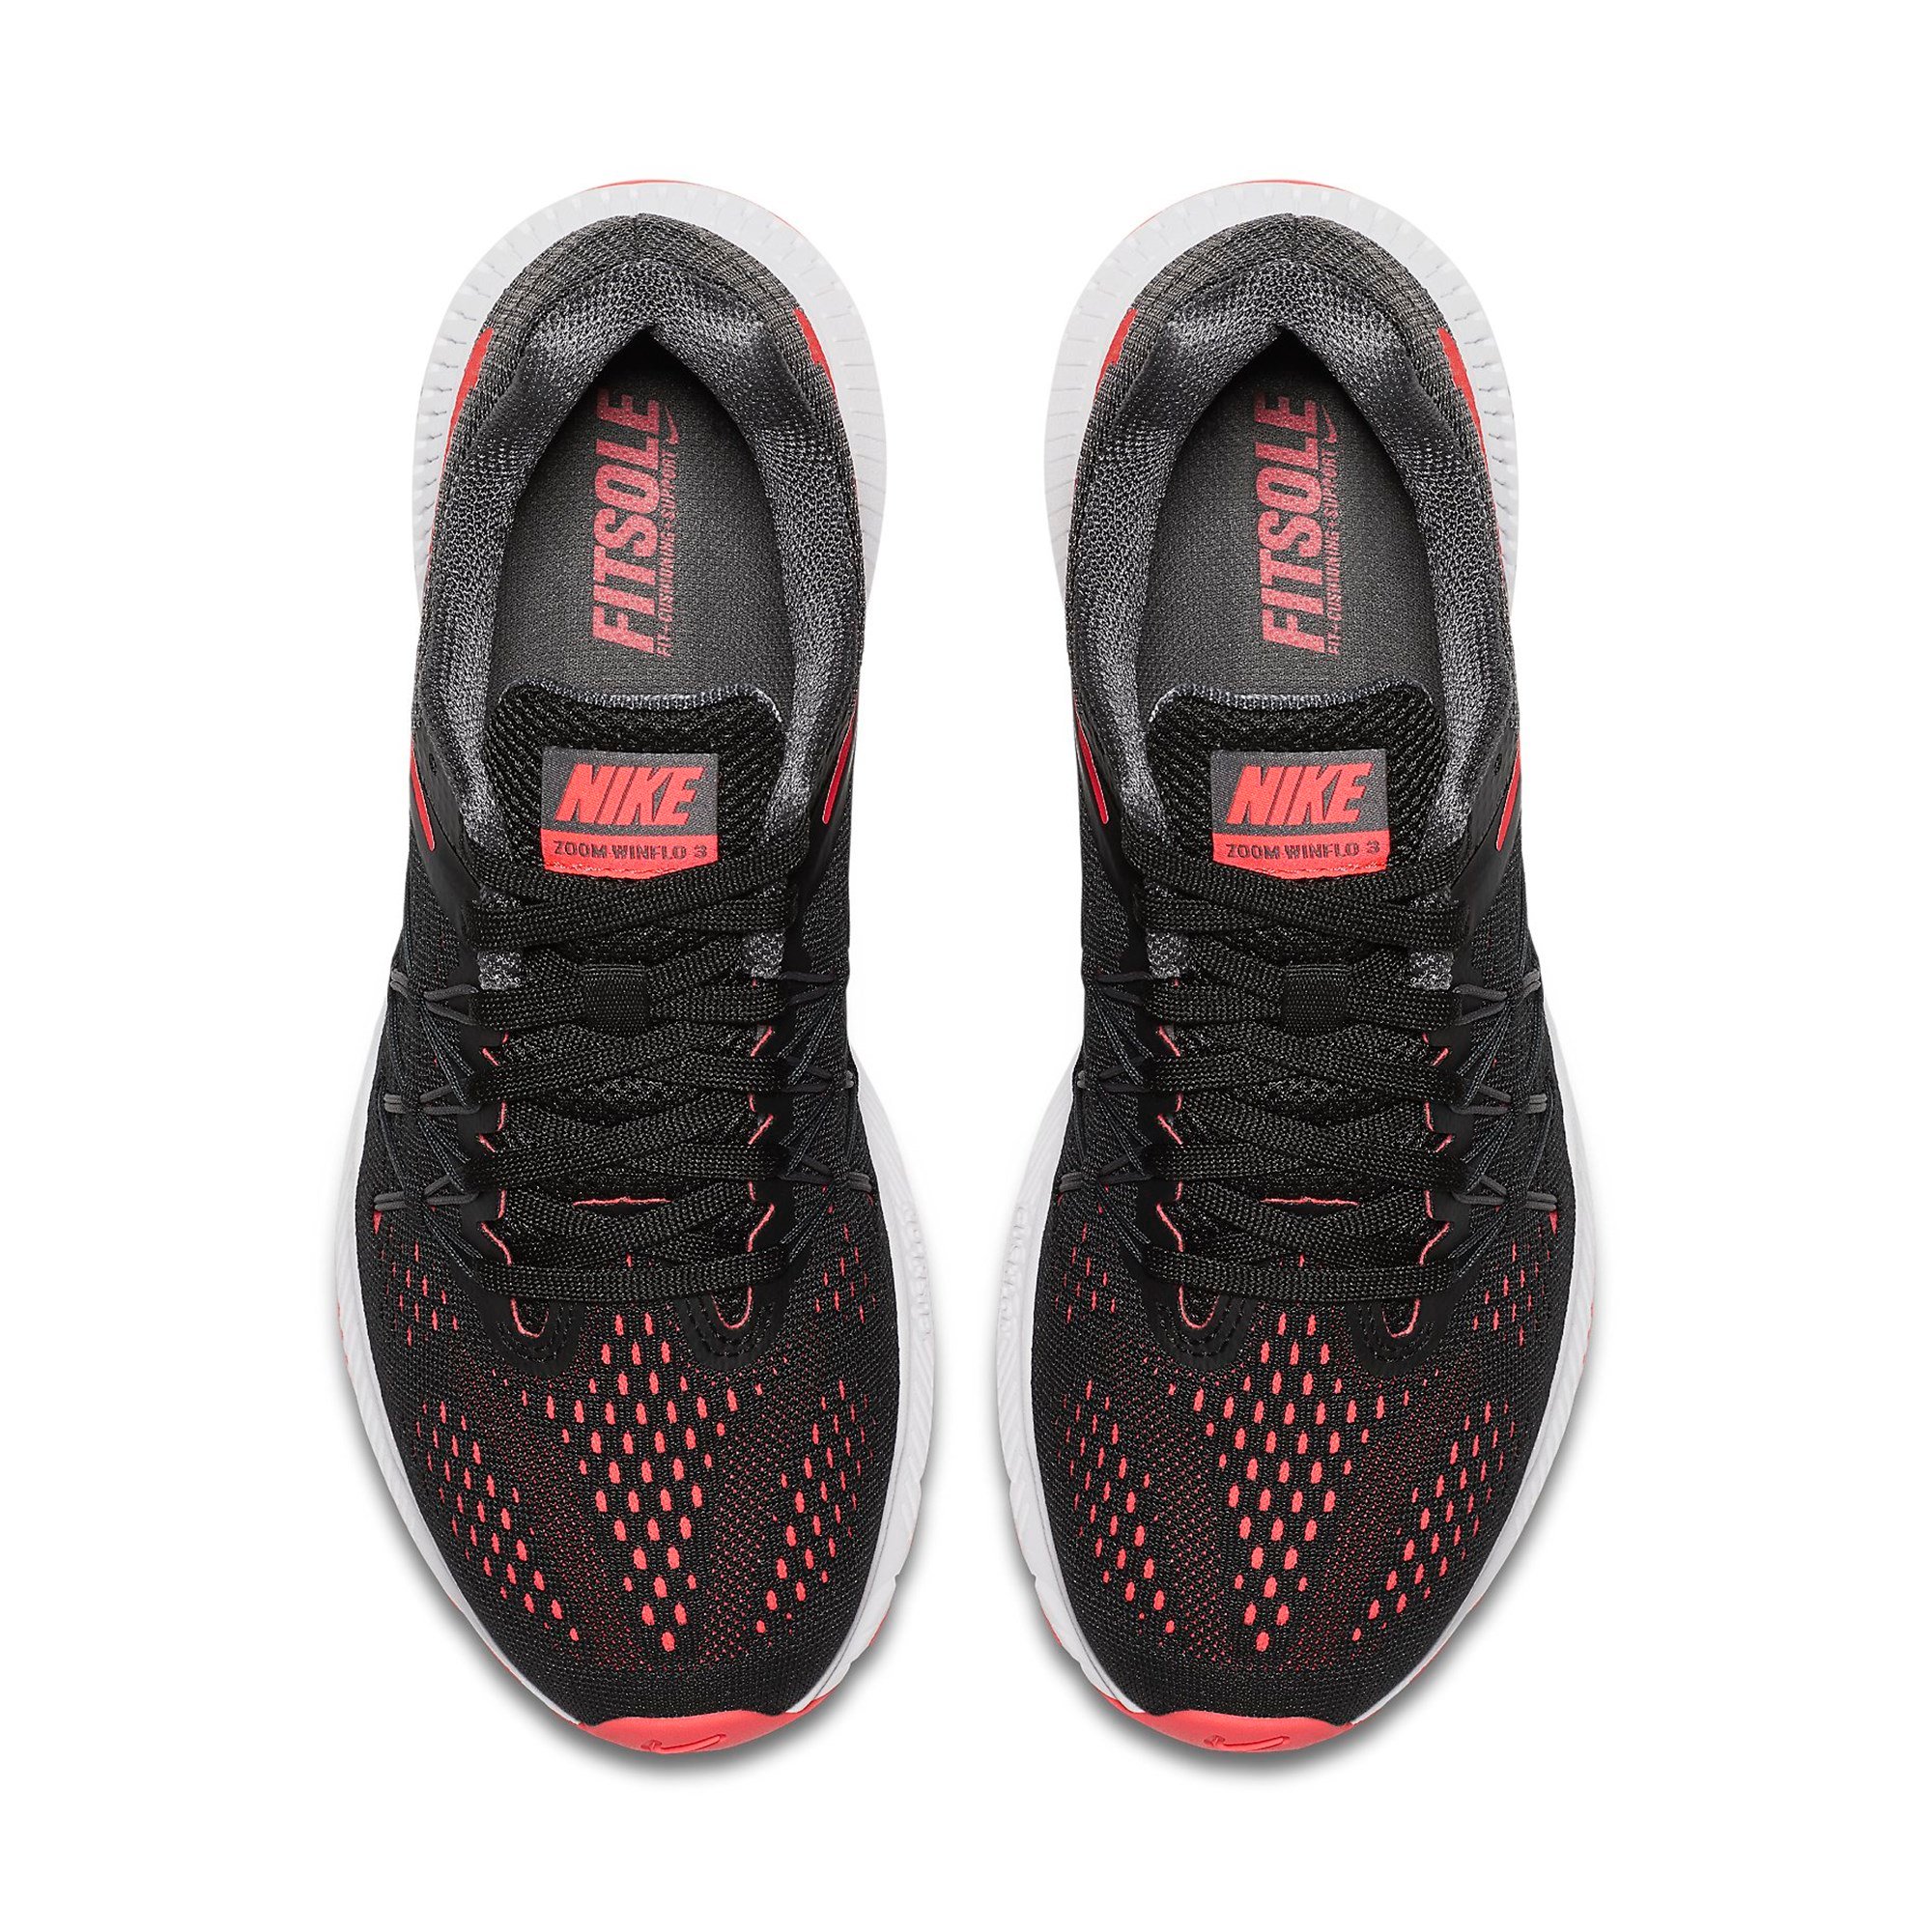 Nike Zoom Winflo 3 Bayan Spor Ayakkabı Ürün kodu: 831562-010 | Etichet Sport